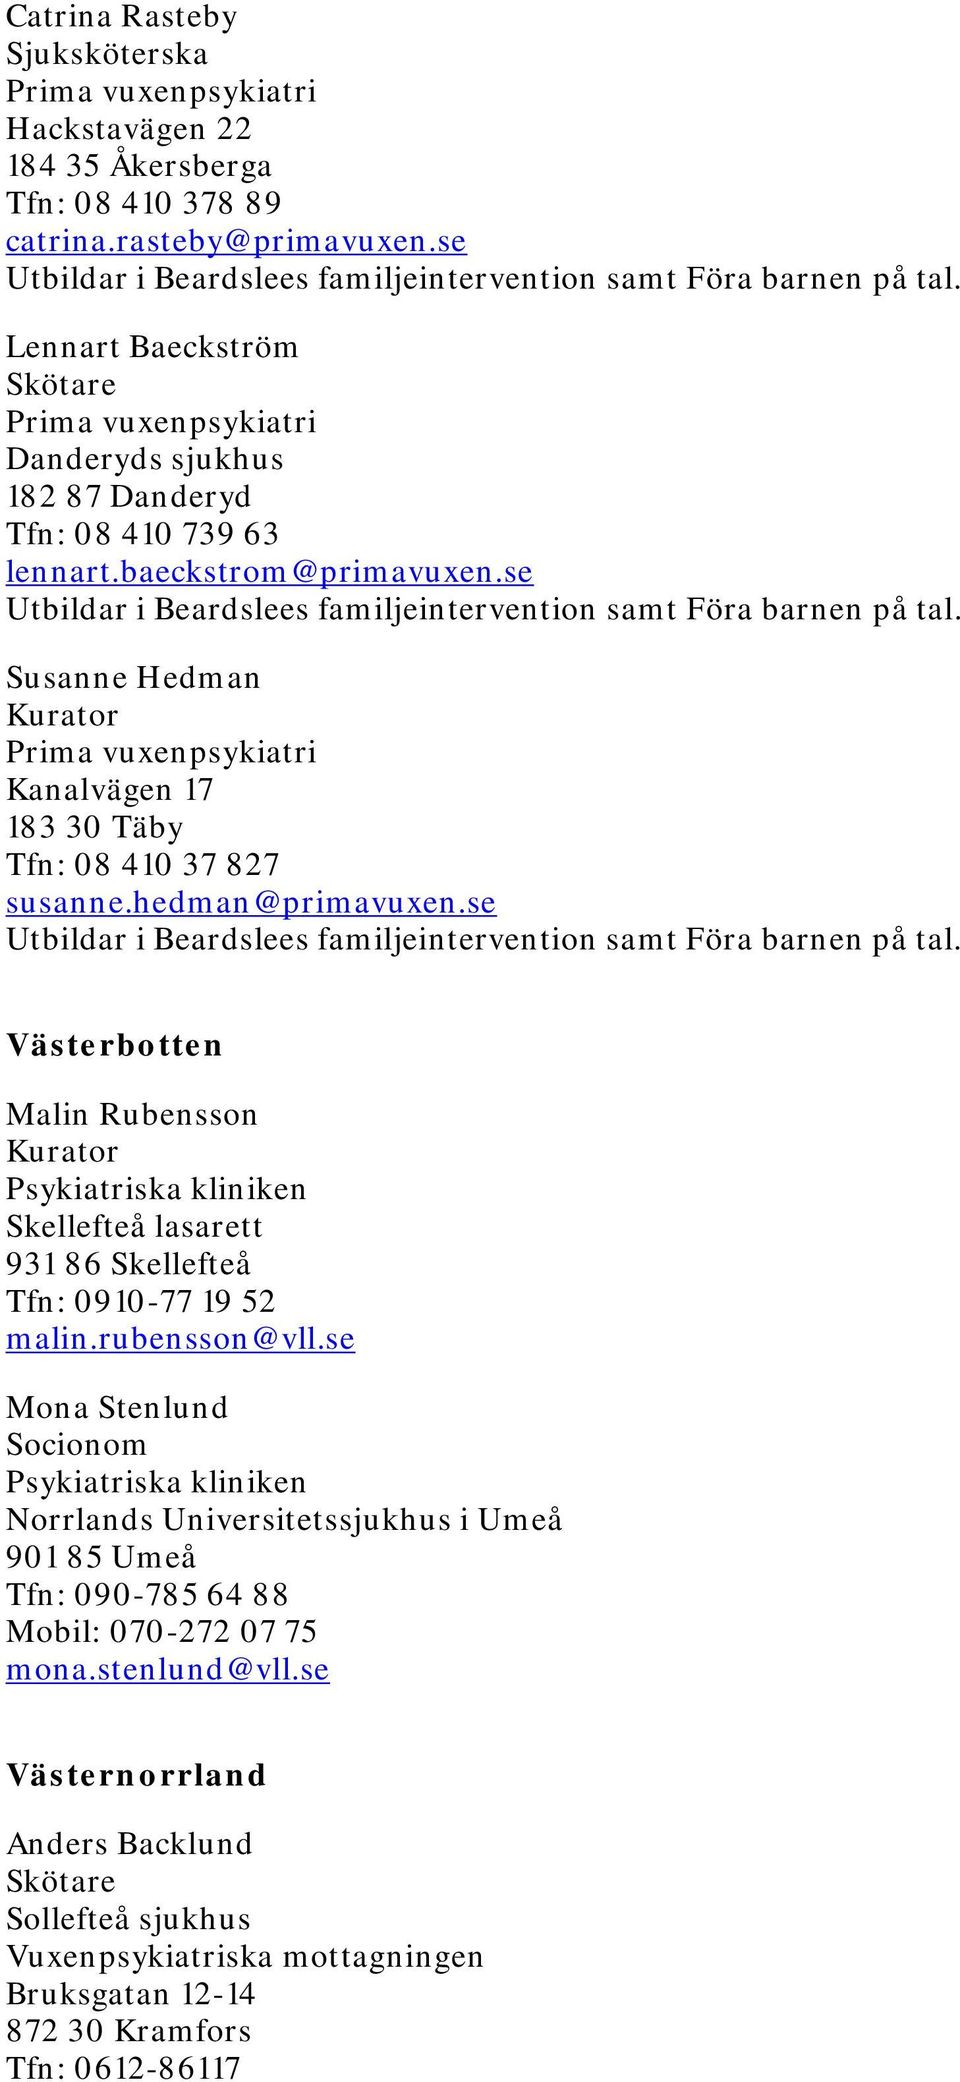 hedman@primavuxen.se Västerbotten Malin Rubensson Psykiatriska kliniken Skellefteå lasarett 931 86 Skellefteå Tfn: 0910-77 19 52 malin.rubensson@vll.